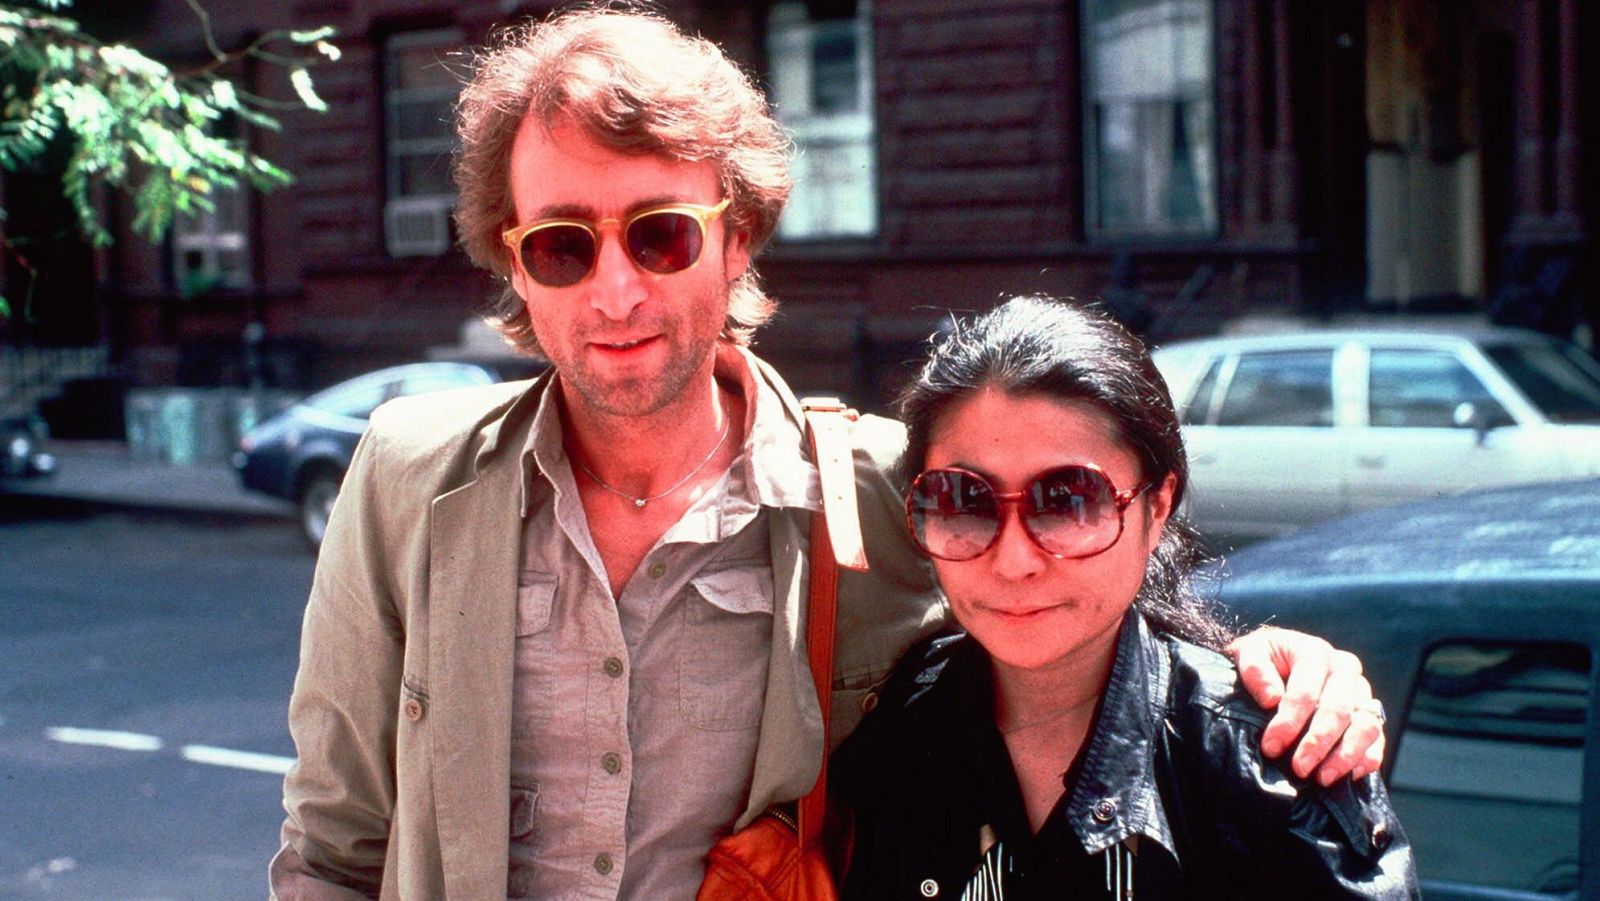 El mundo recuerda a John Lennon en el 40 aniversario de su asesinato - RTVE.es